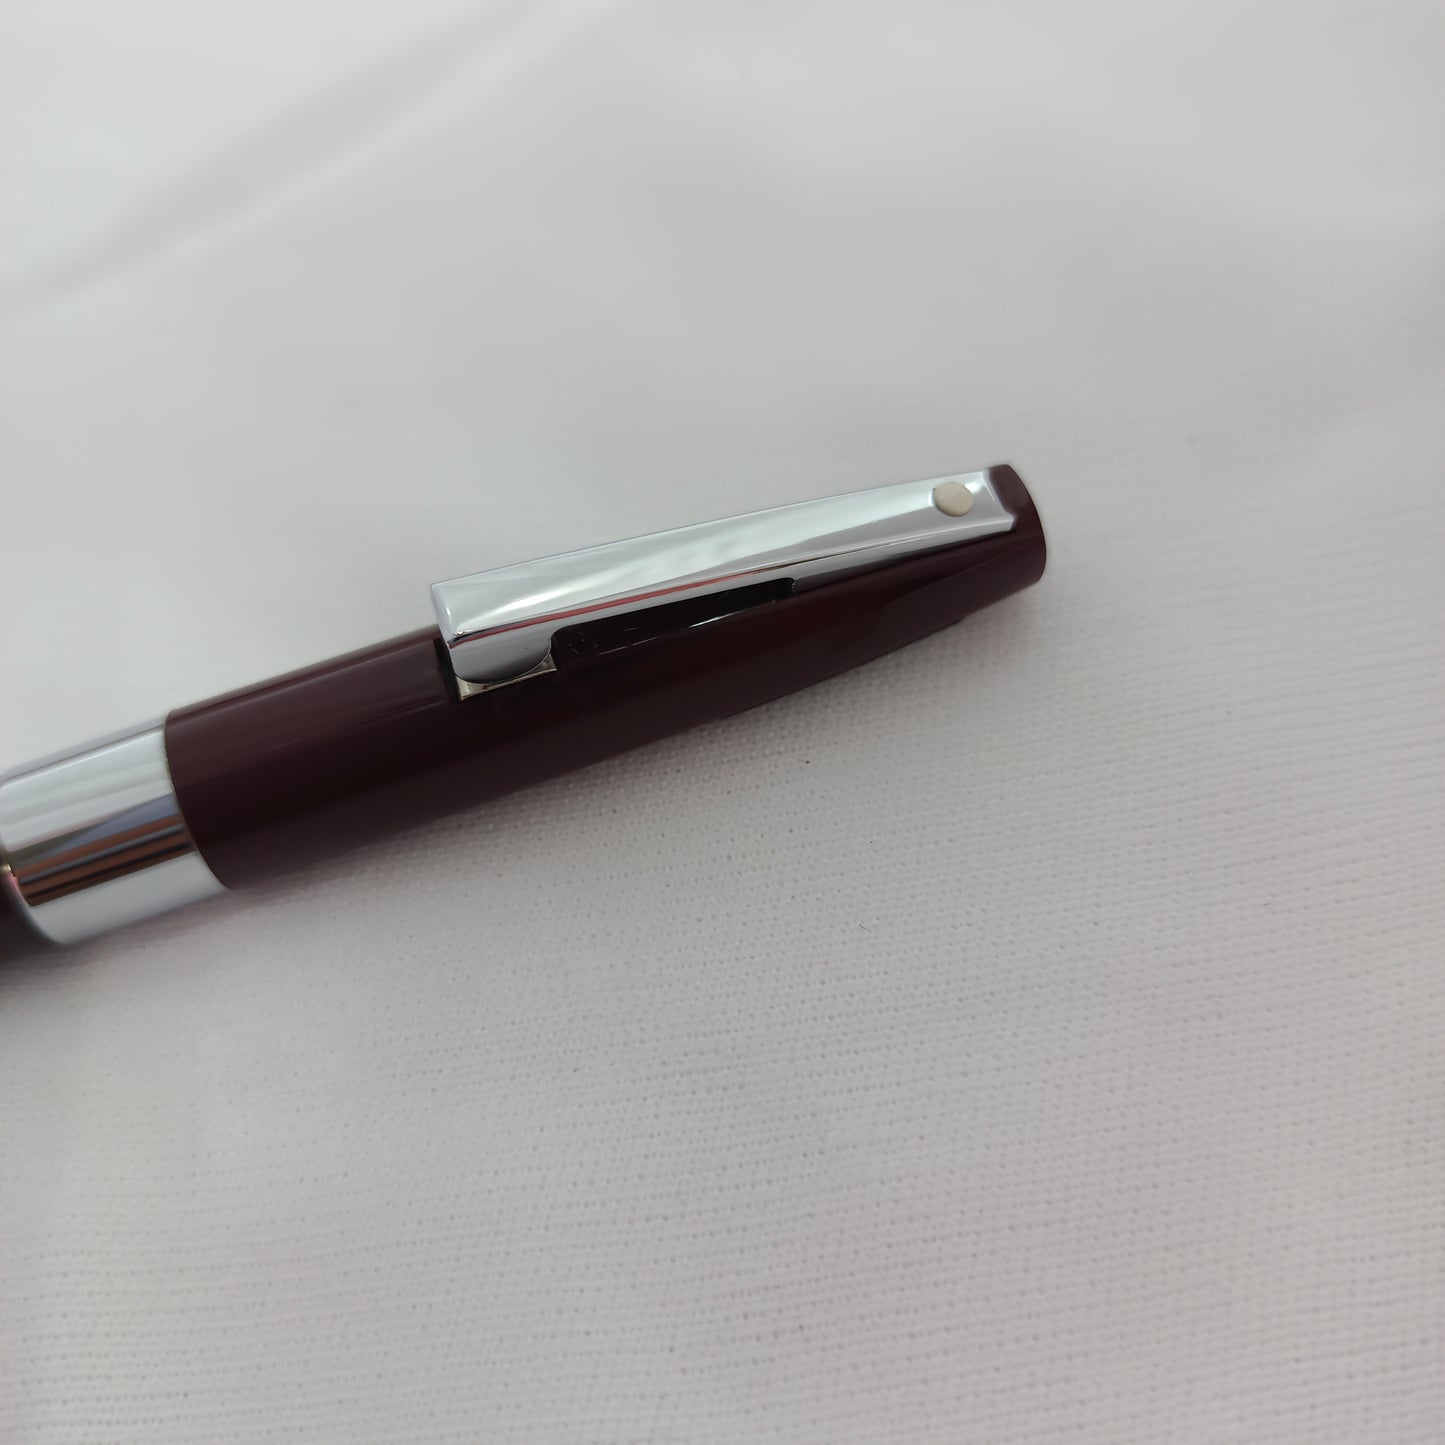 Sheaffer imperial burgundy ballpoint pen made in USA